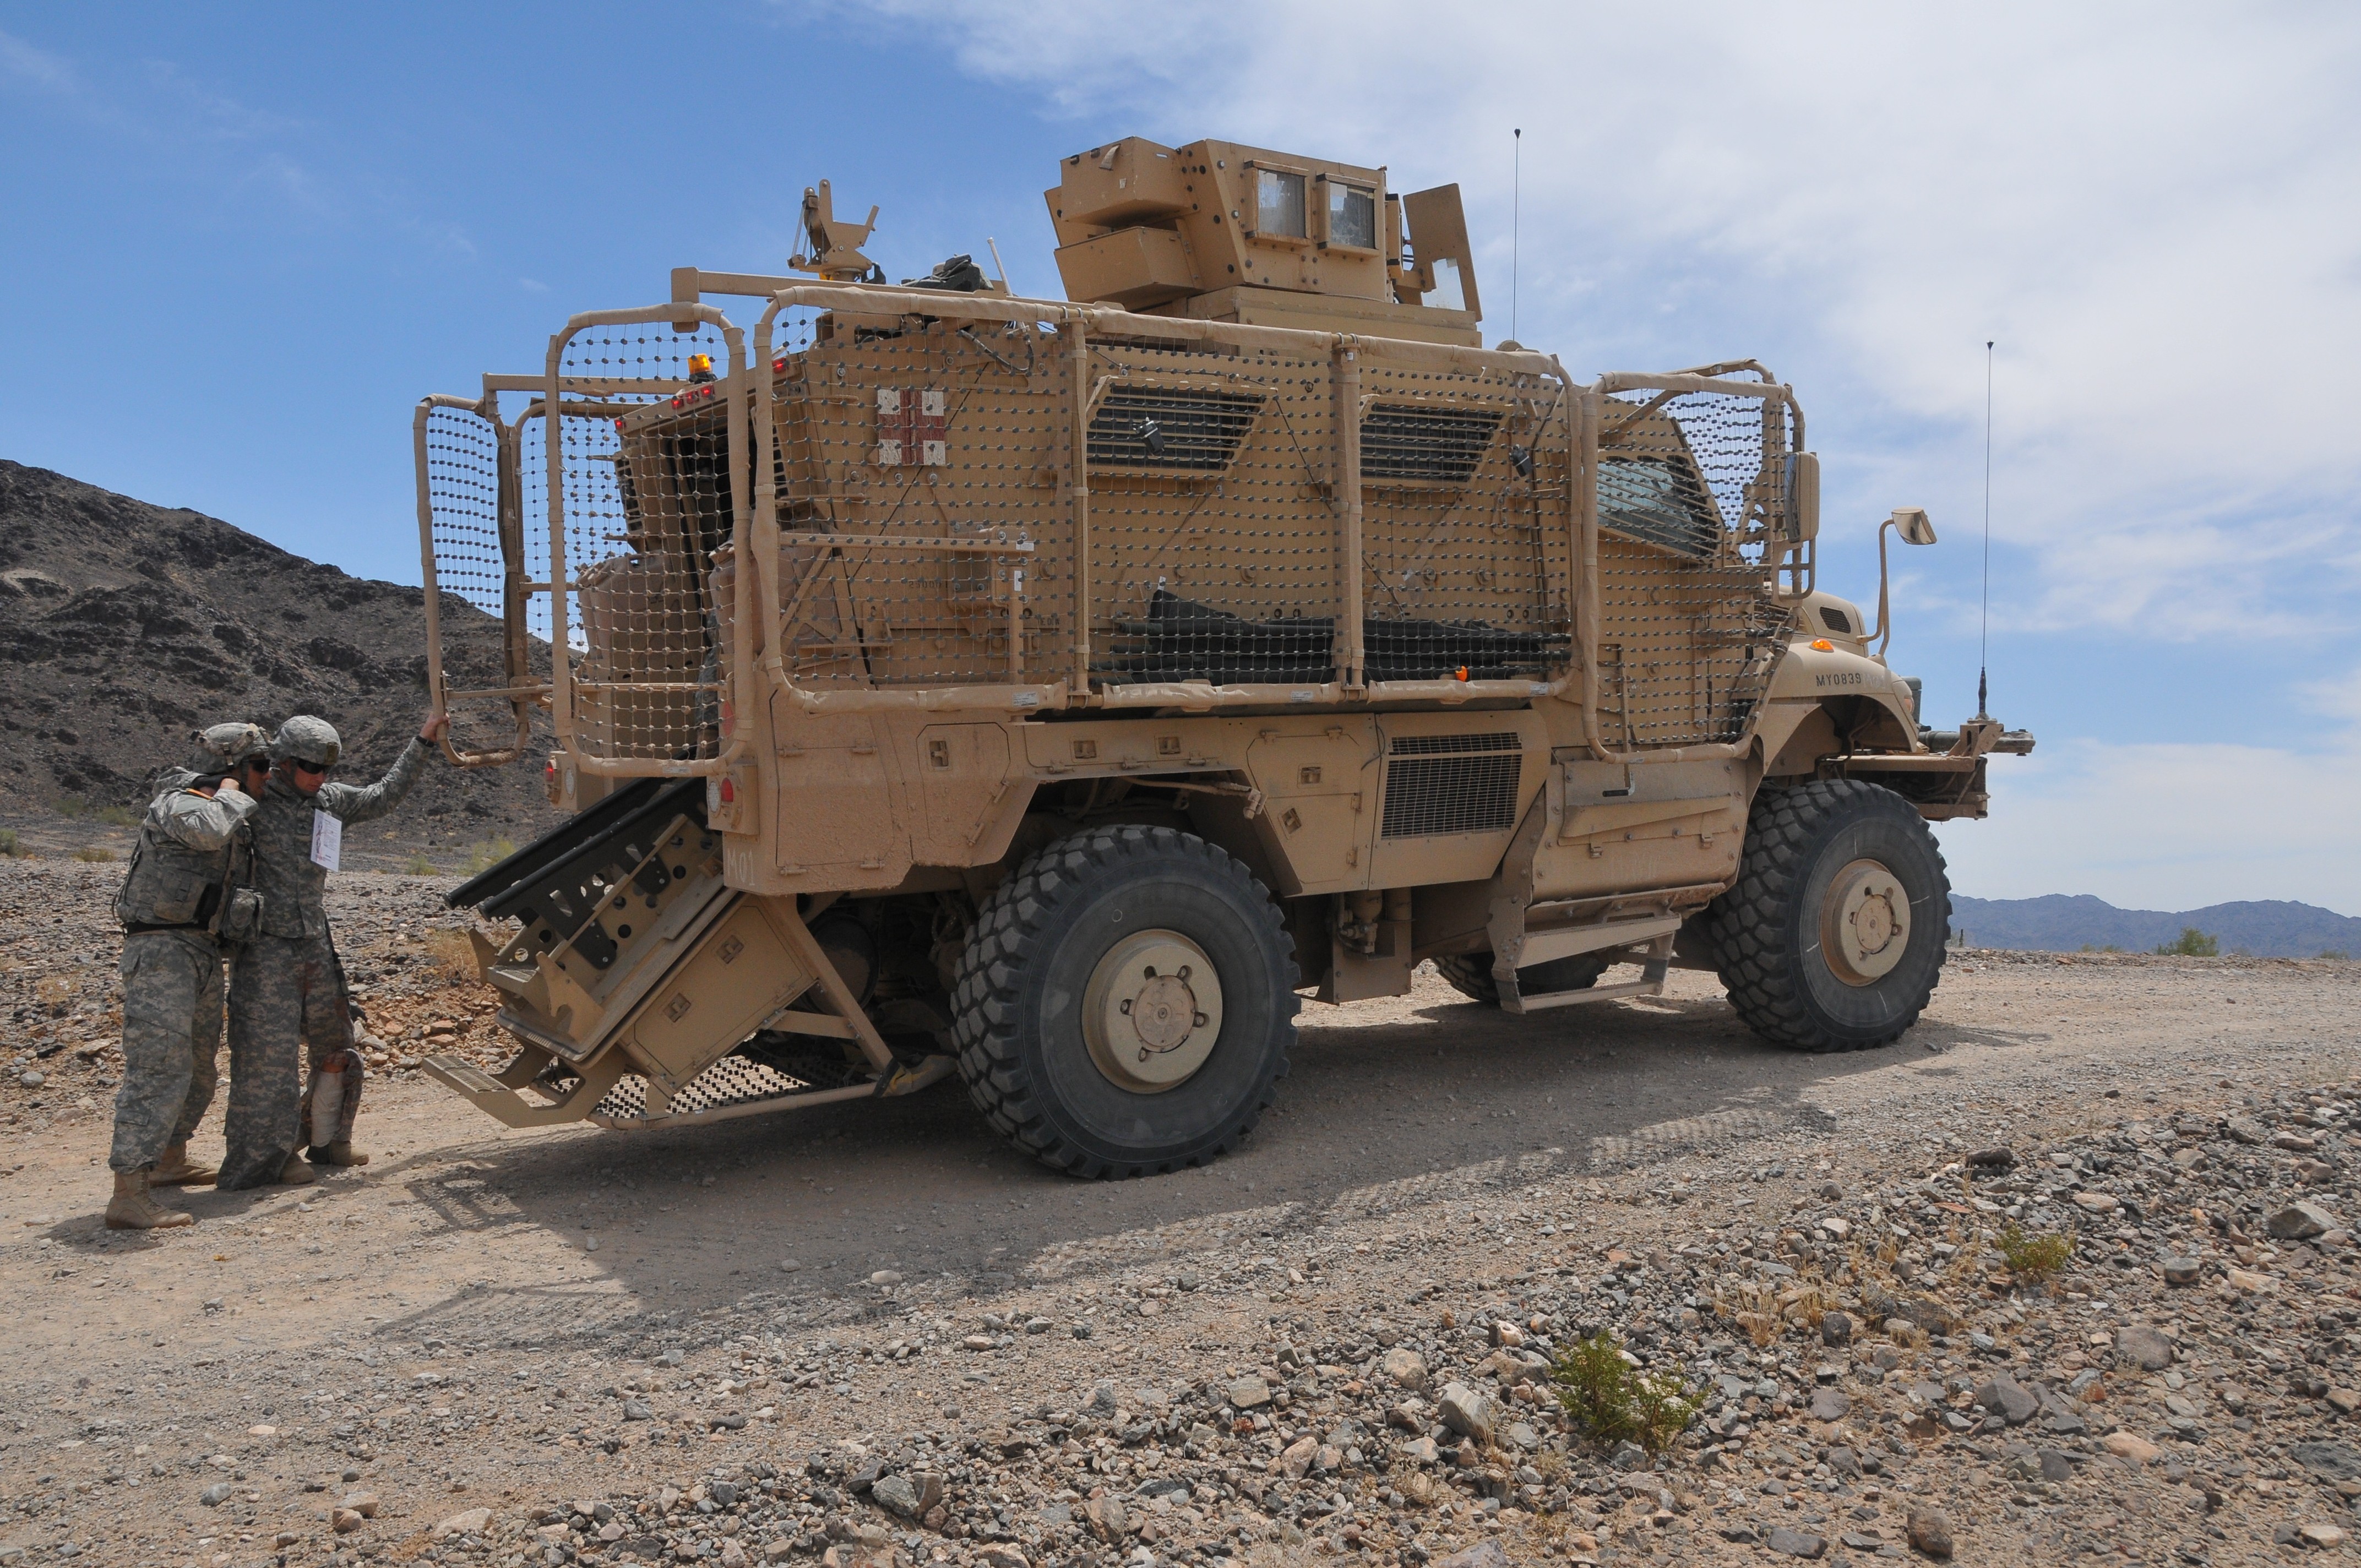 US Army Ausgeschieden Unterstützung Unsere Militär Troops Oval Auto Magnet